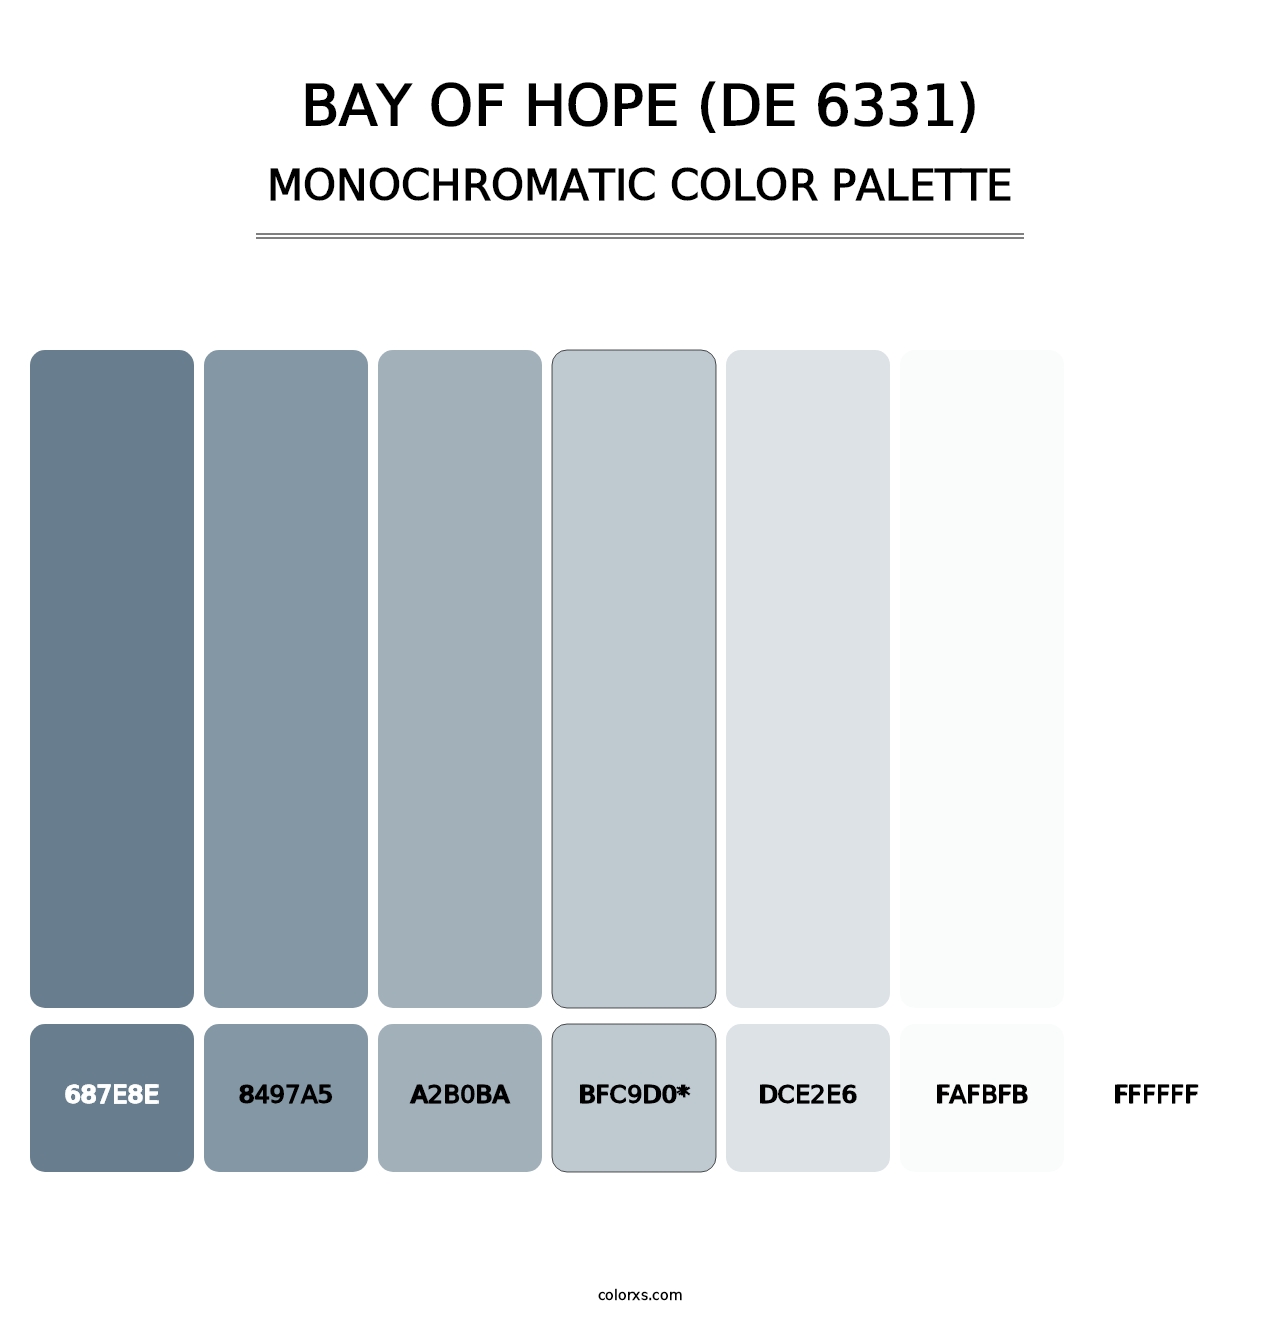 Bay of Hope (DE 6331) - Monochromatic Color Palette